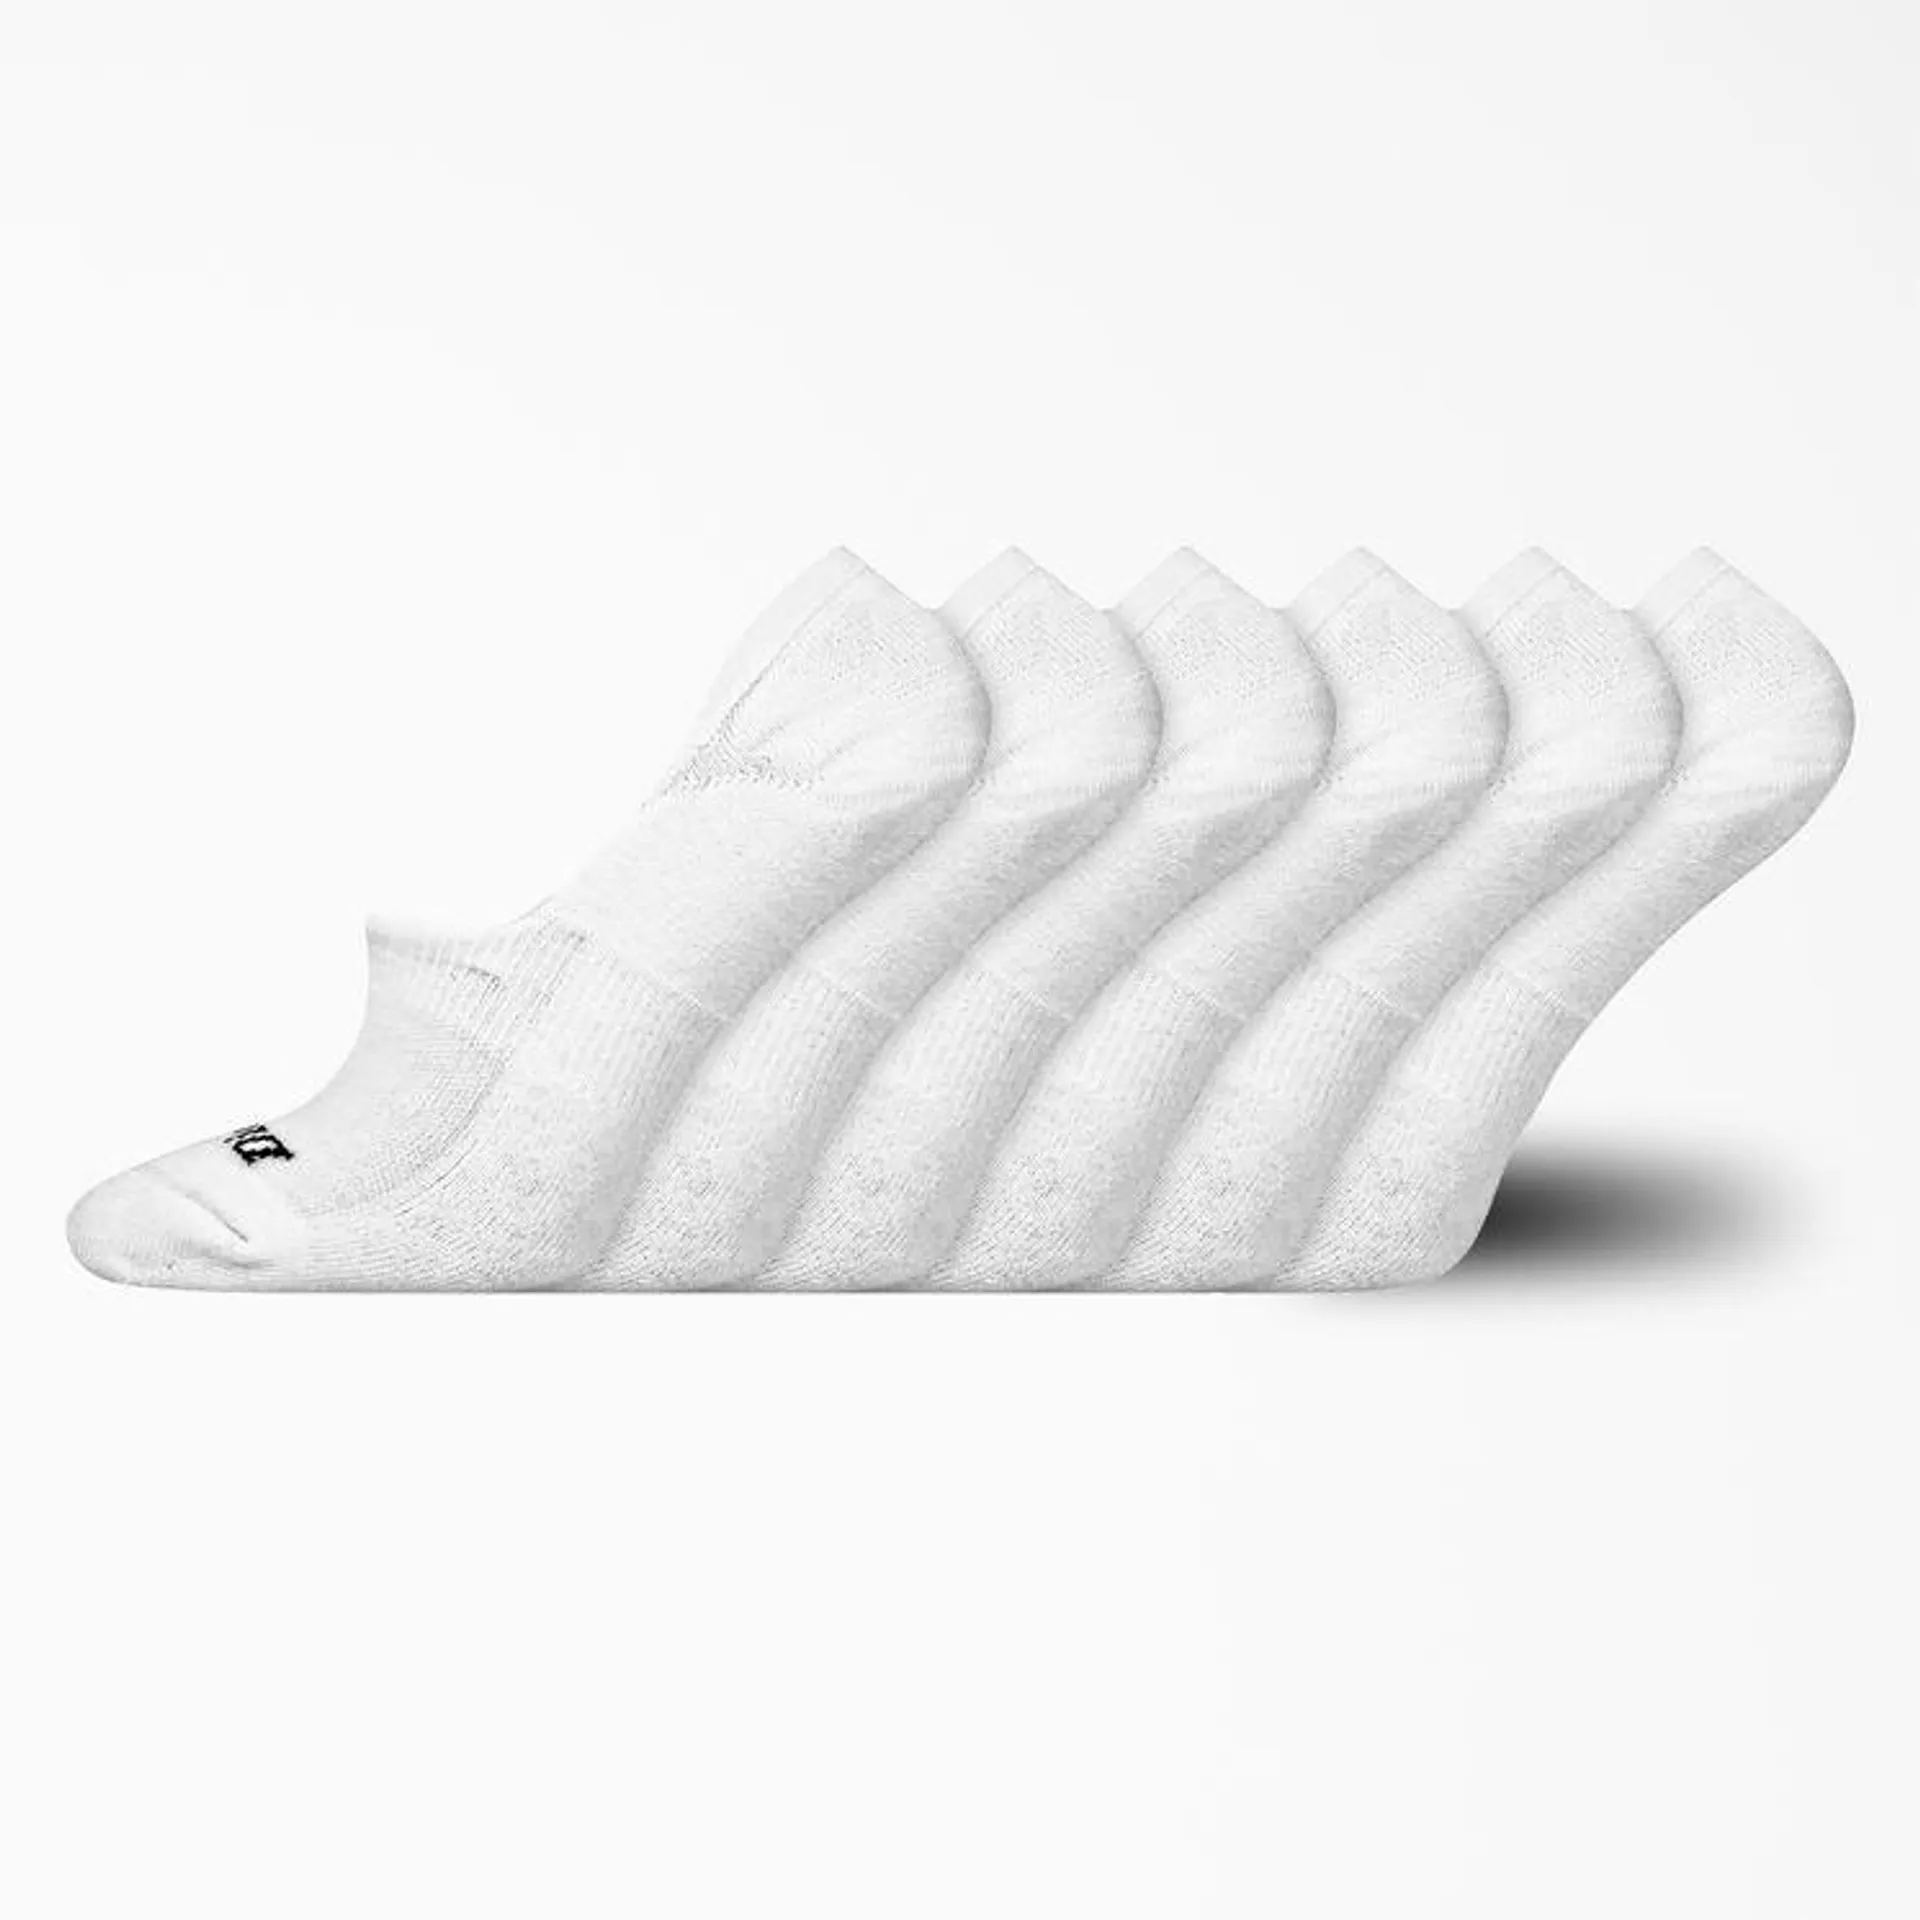 Women's Moisture Control Liner Socks, Size 6-9, 6-Pack, White